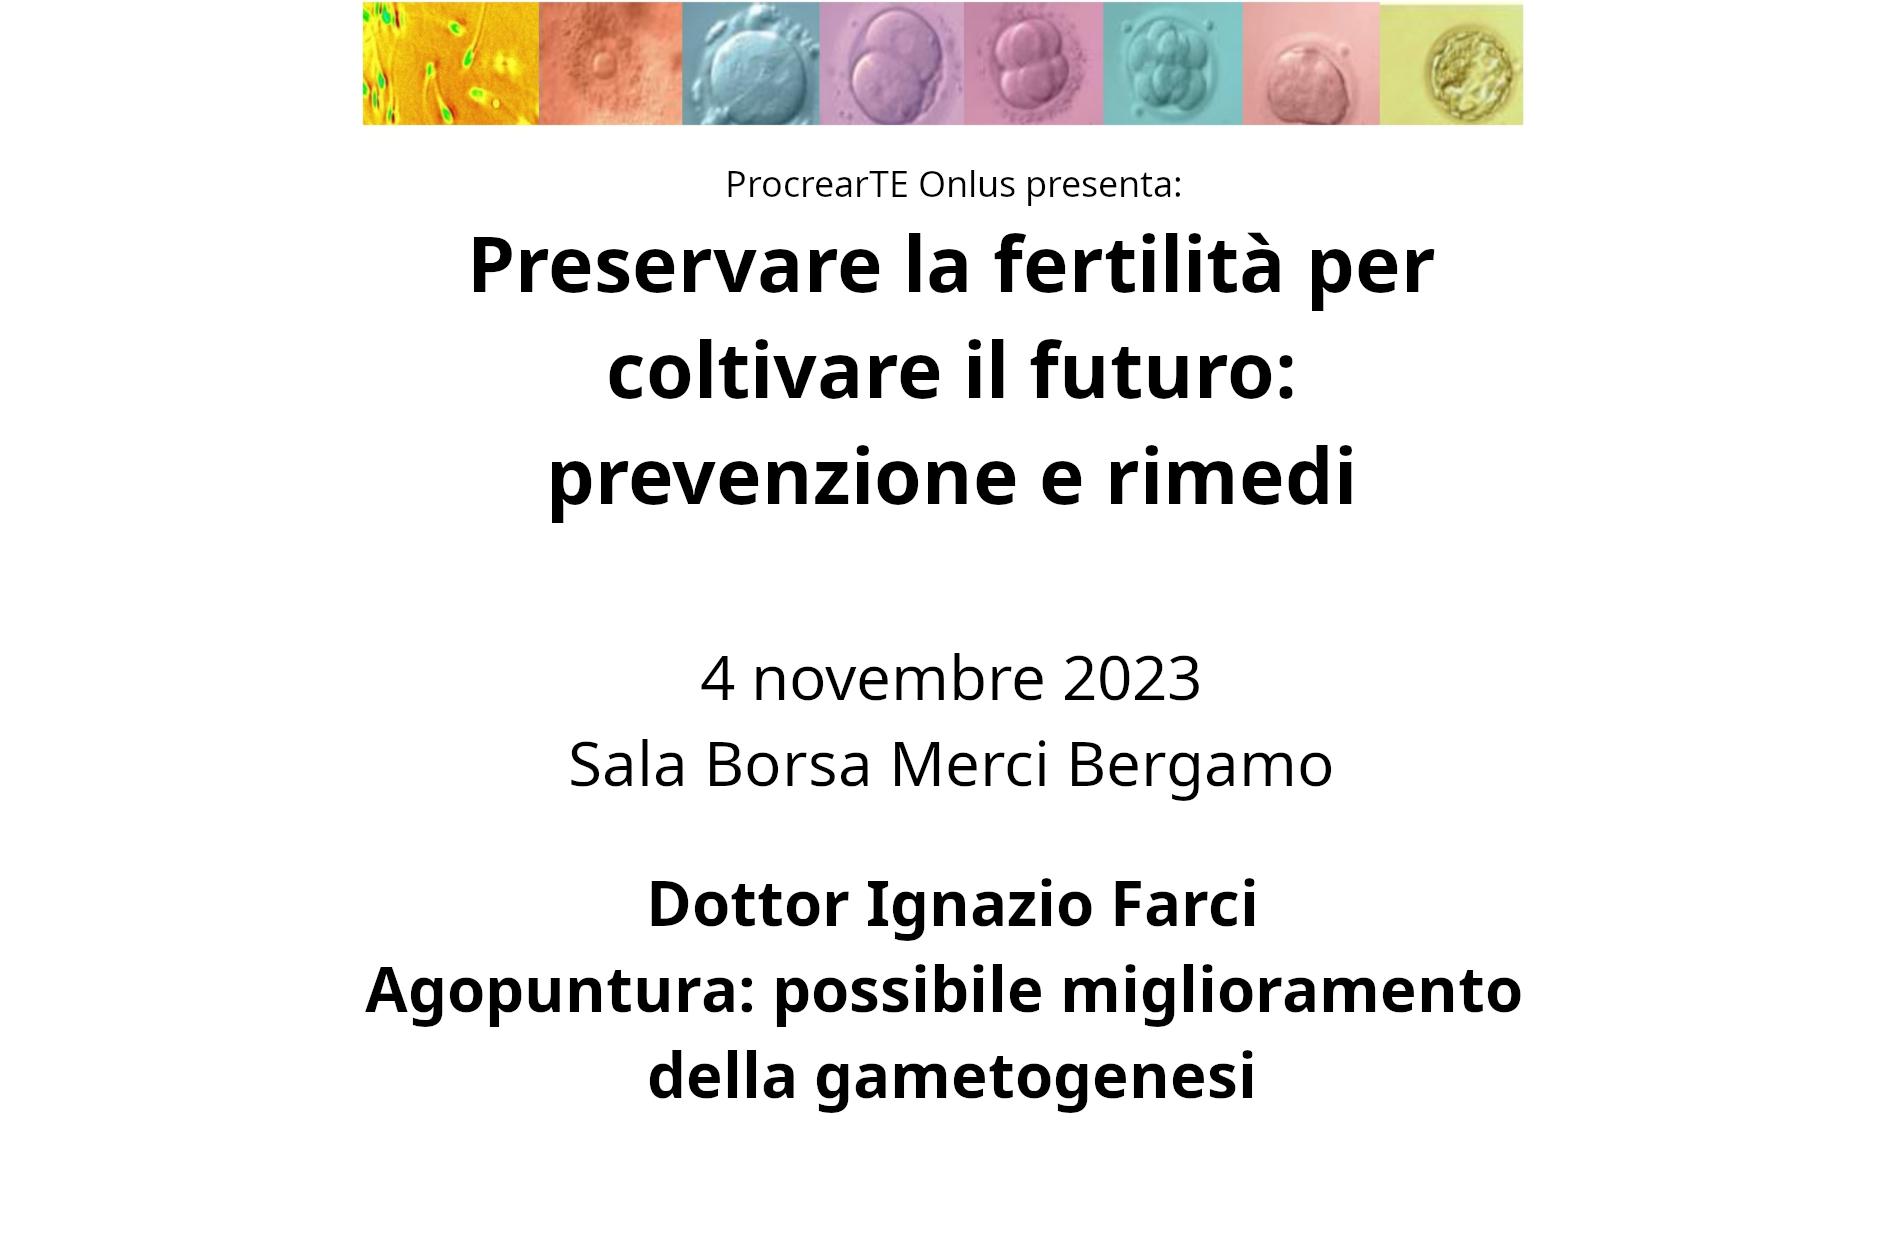 Preservare la fertilità per coltivare il futuro: prevenzione e rimedi